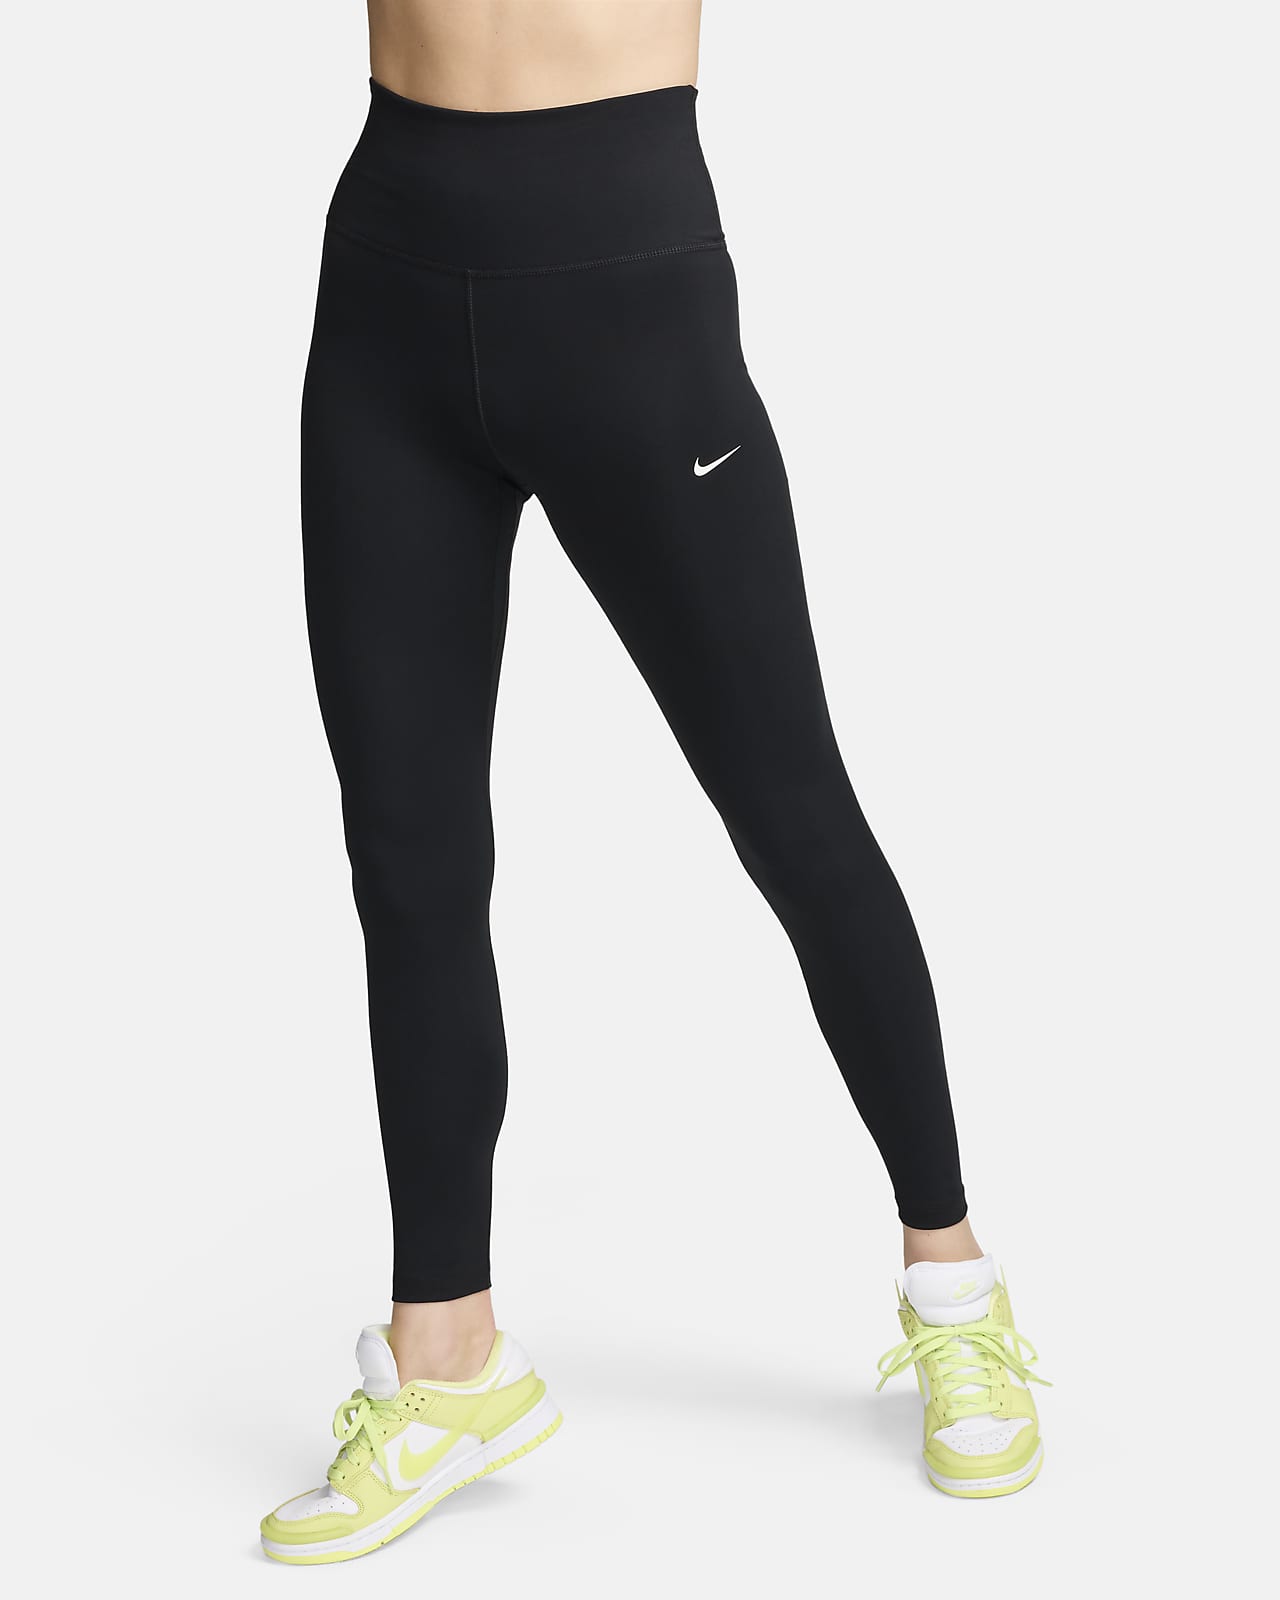 Nike One Women's High-Waisted Full-Length Leggings. Nike IL